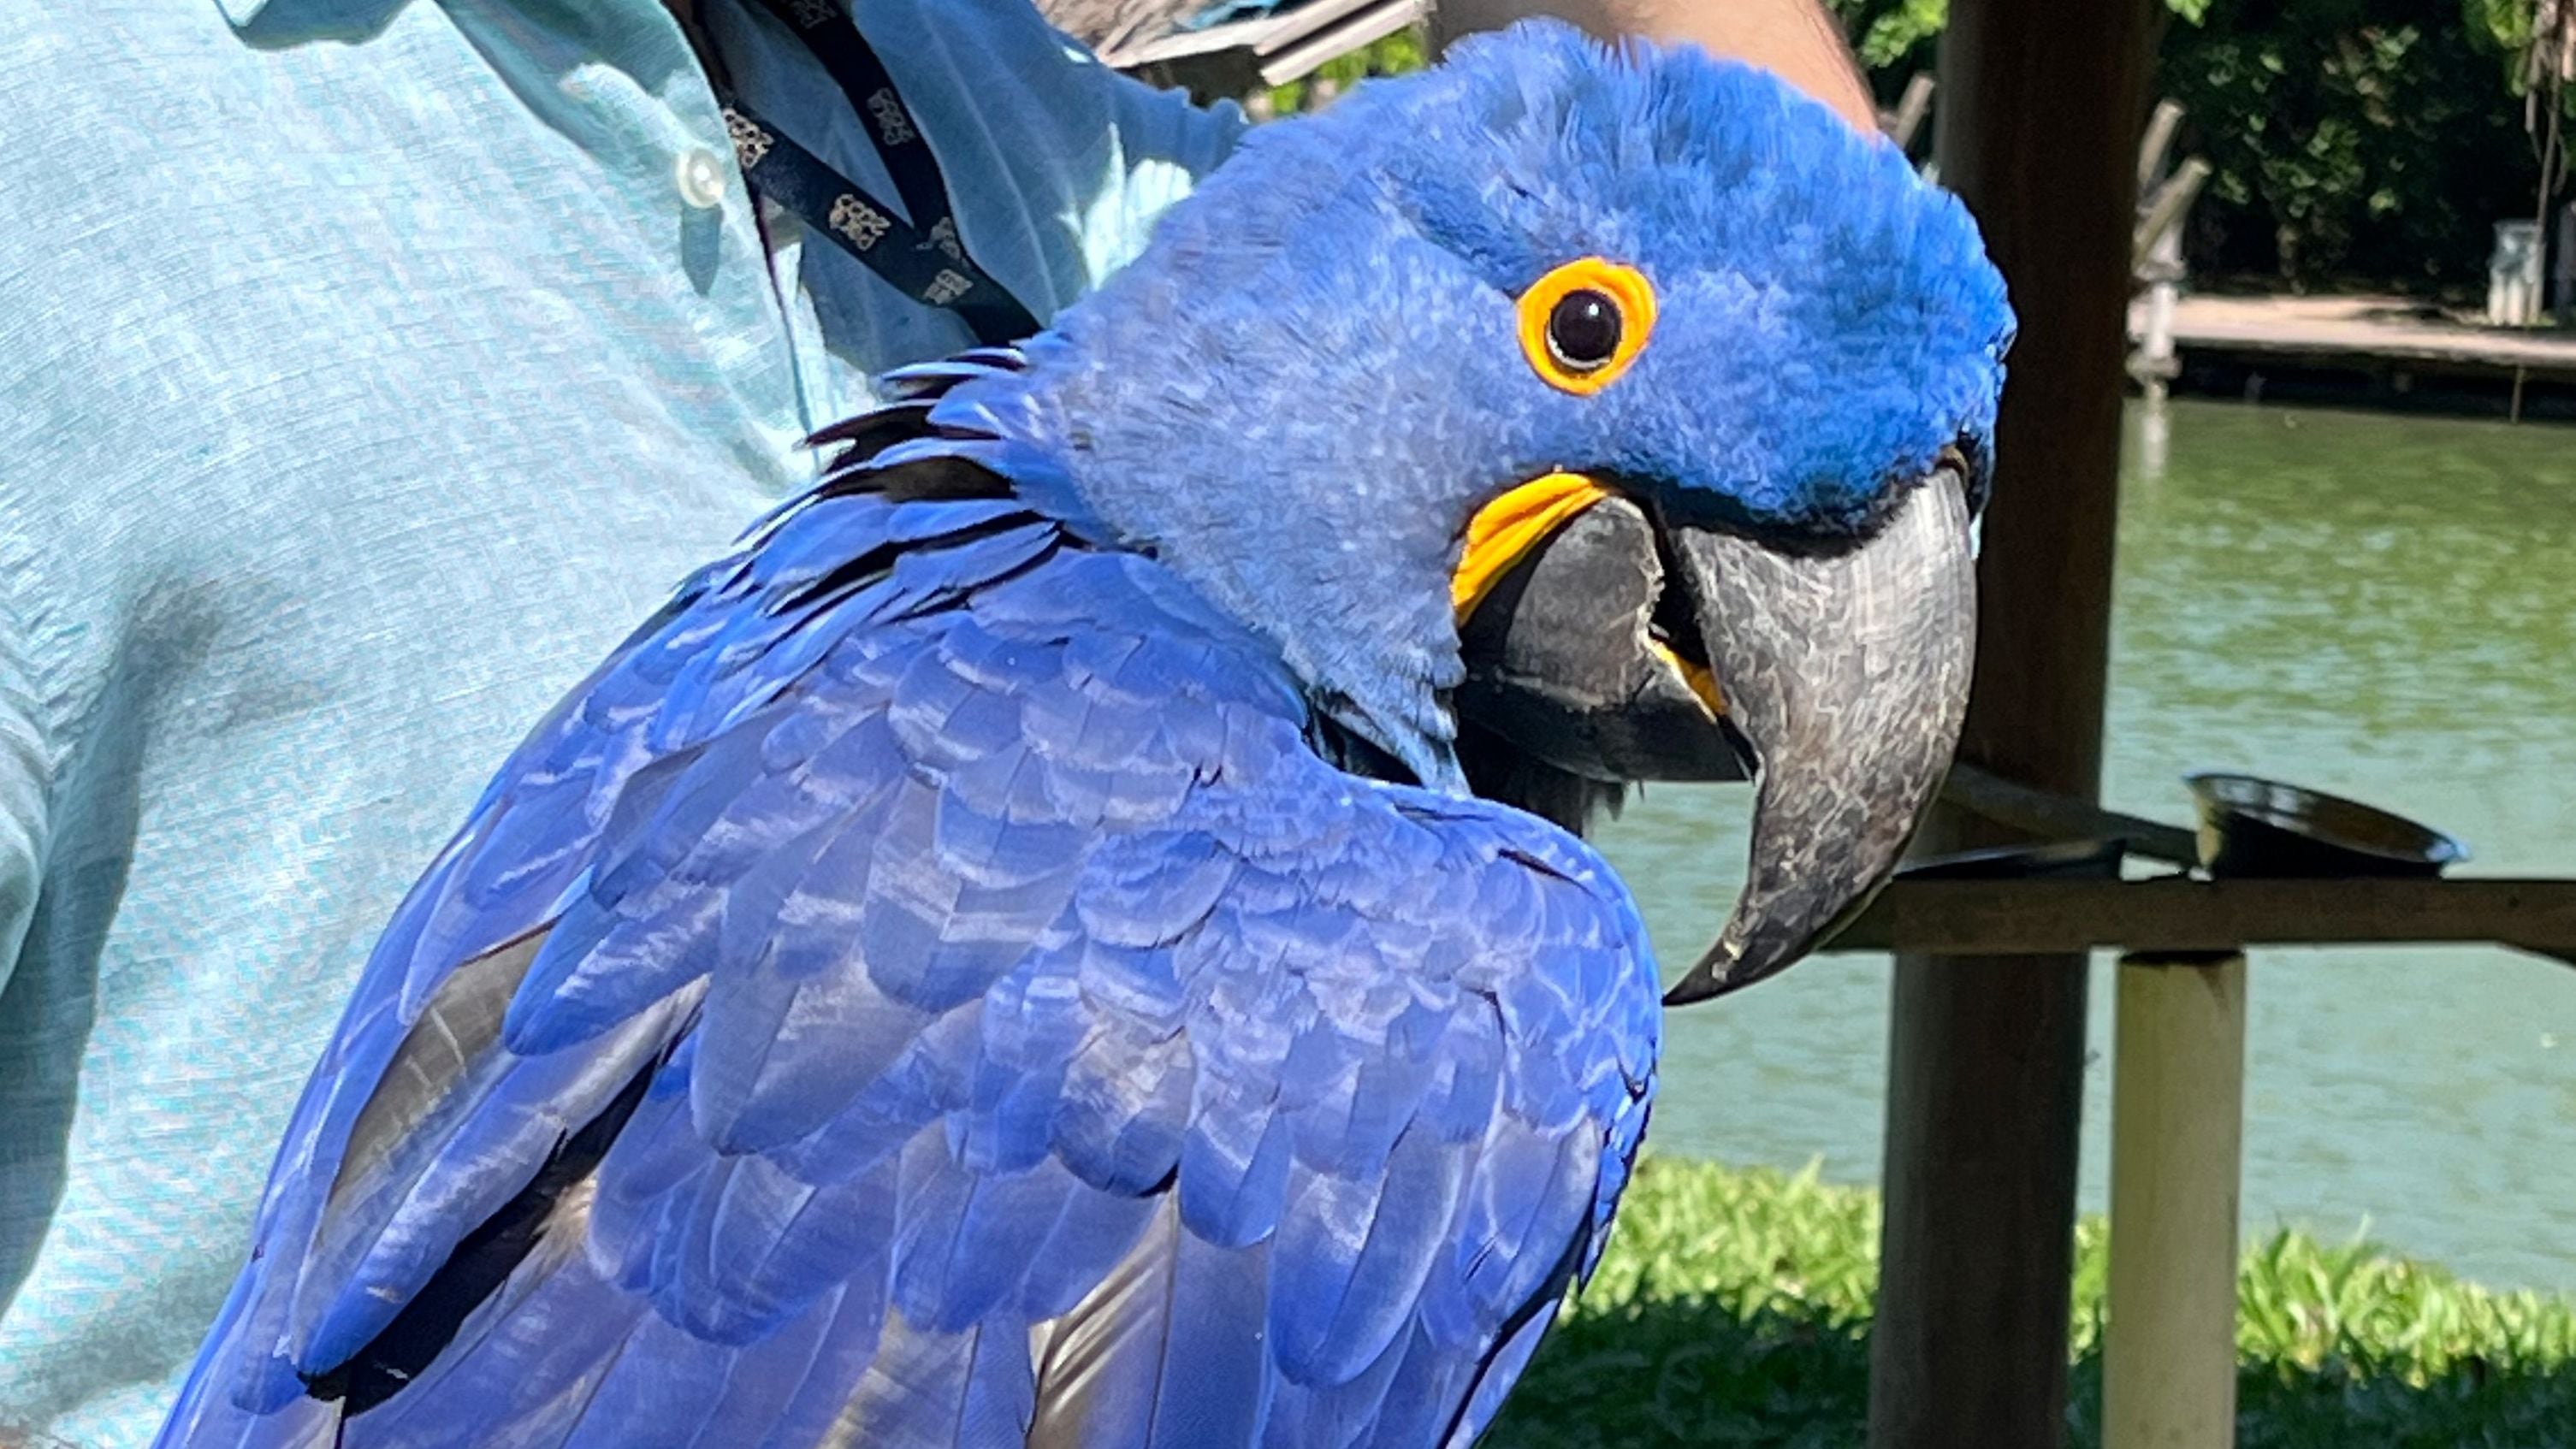 El Arara Azul o Guacamaya azul, una de las aves más exóticas de la Amazonía en peligro de extinción y en estado de protección en el Parque de las Gazas de Belém. Foto: Marcos Colombo